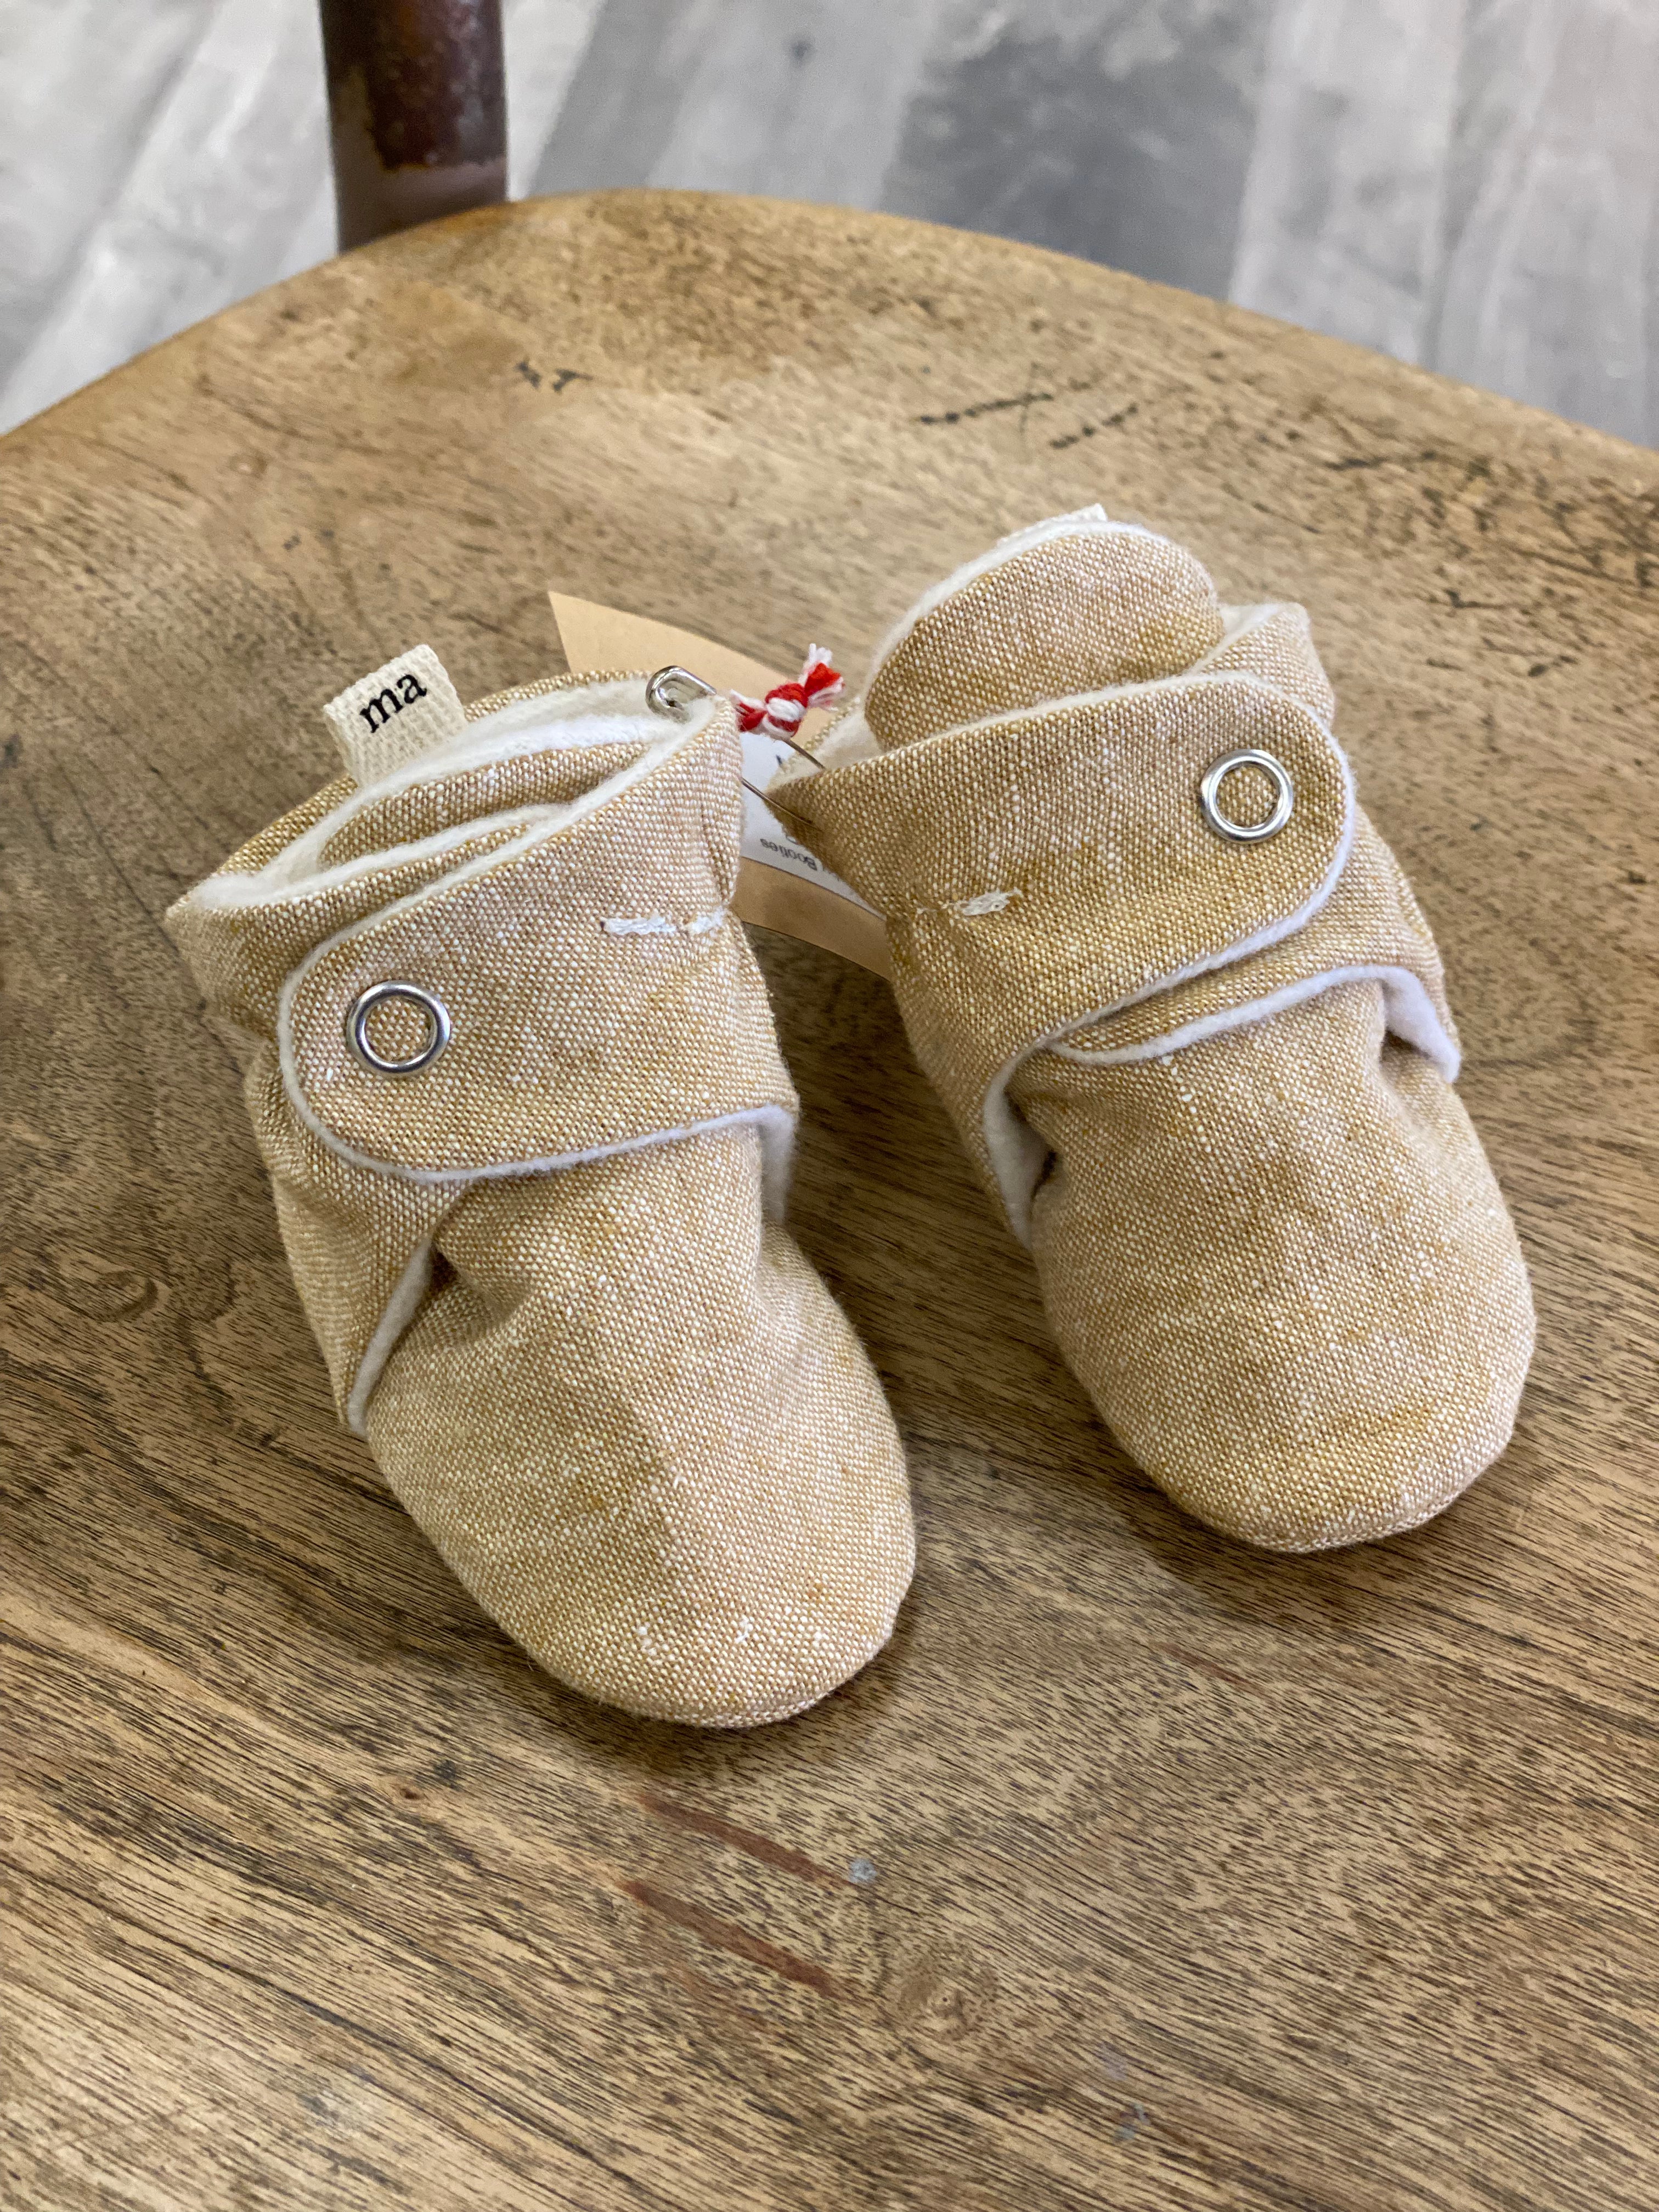 Handmade Cotton/Linen Baby Booties